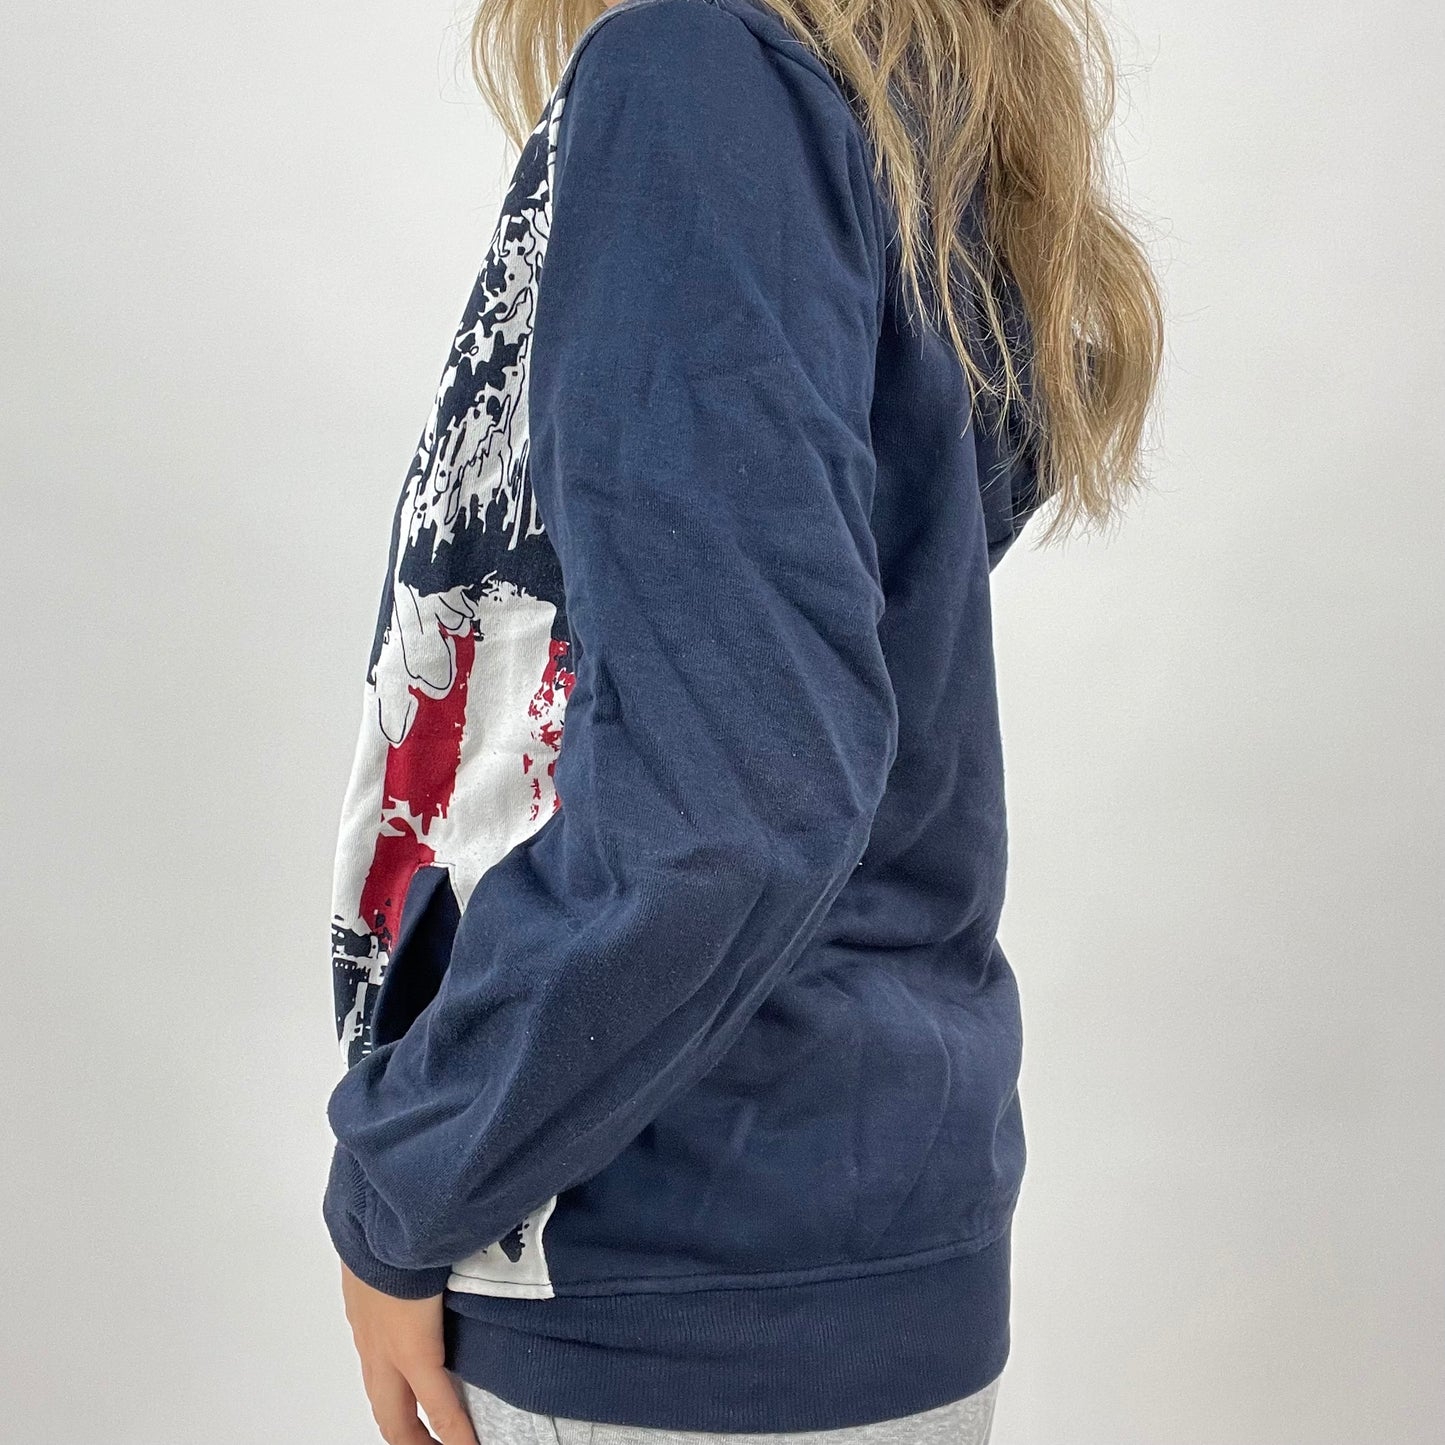 💻 BLOKECORE DROP | navy graphic zip up hoodie - small